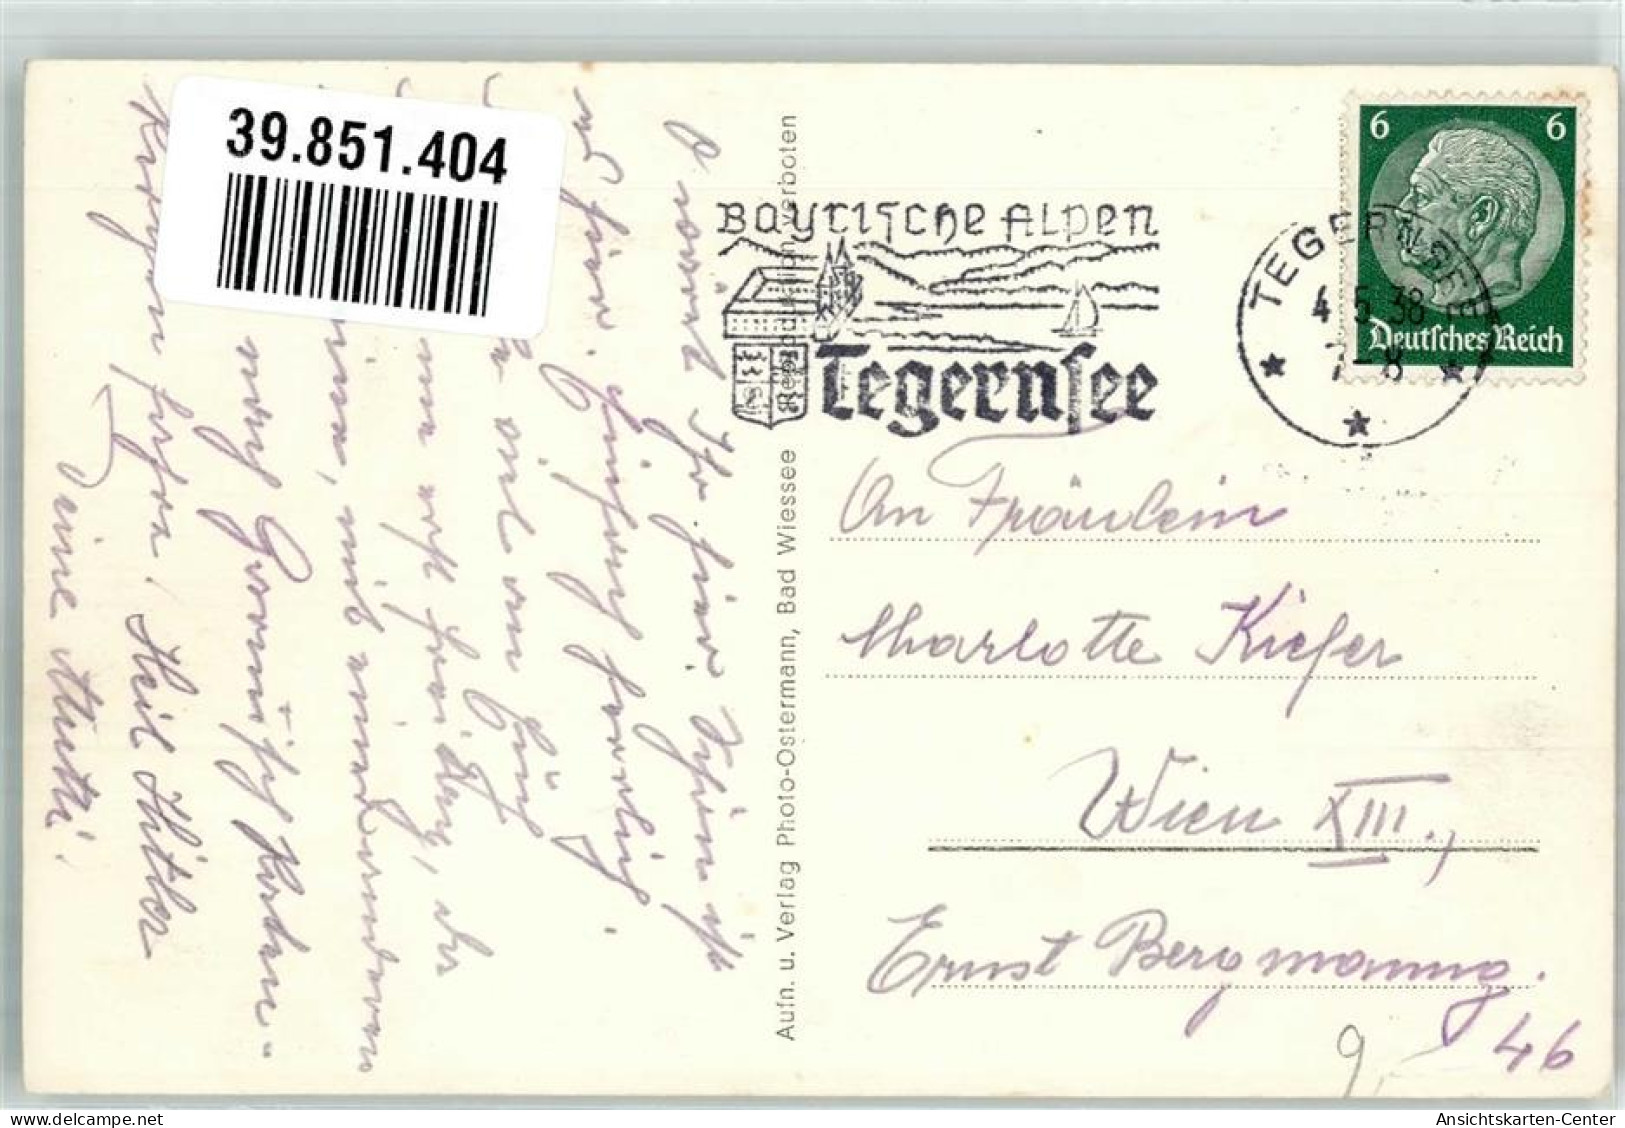 39851404 - Tegernsee - Tegernsee